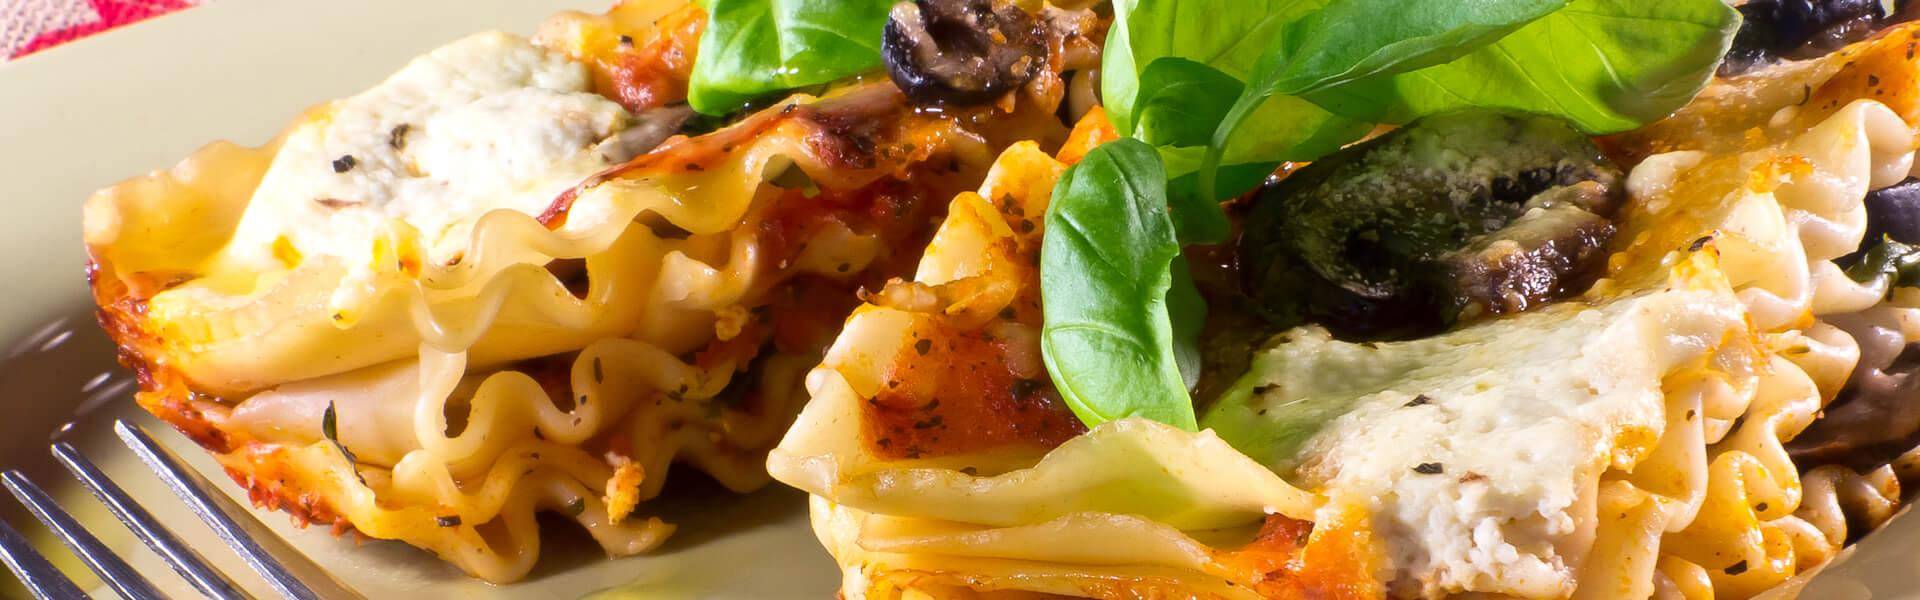 Lasagne ai carciofi e Prosciutto Cotto Menatti: ricetta